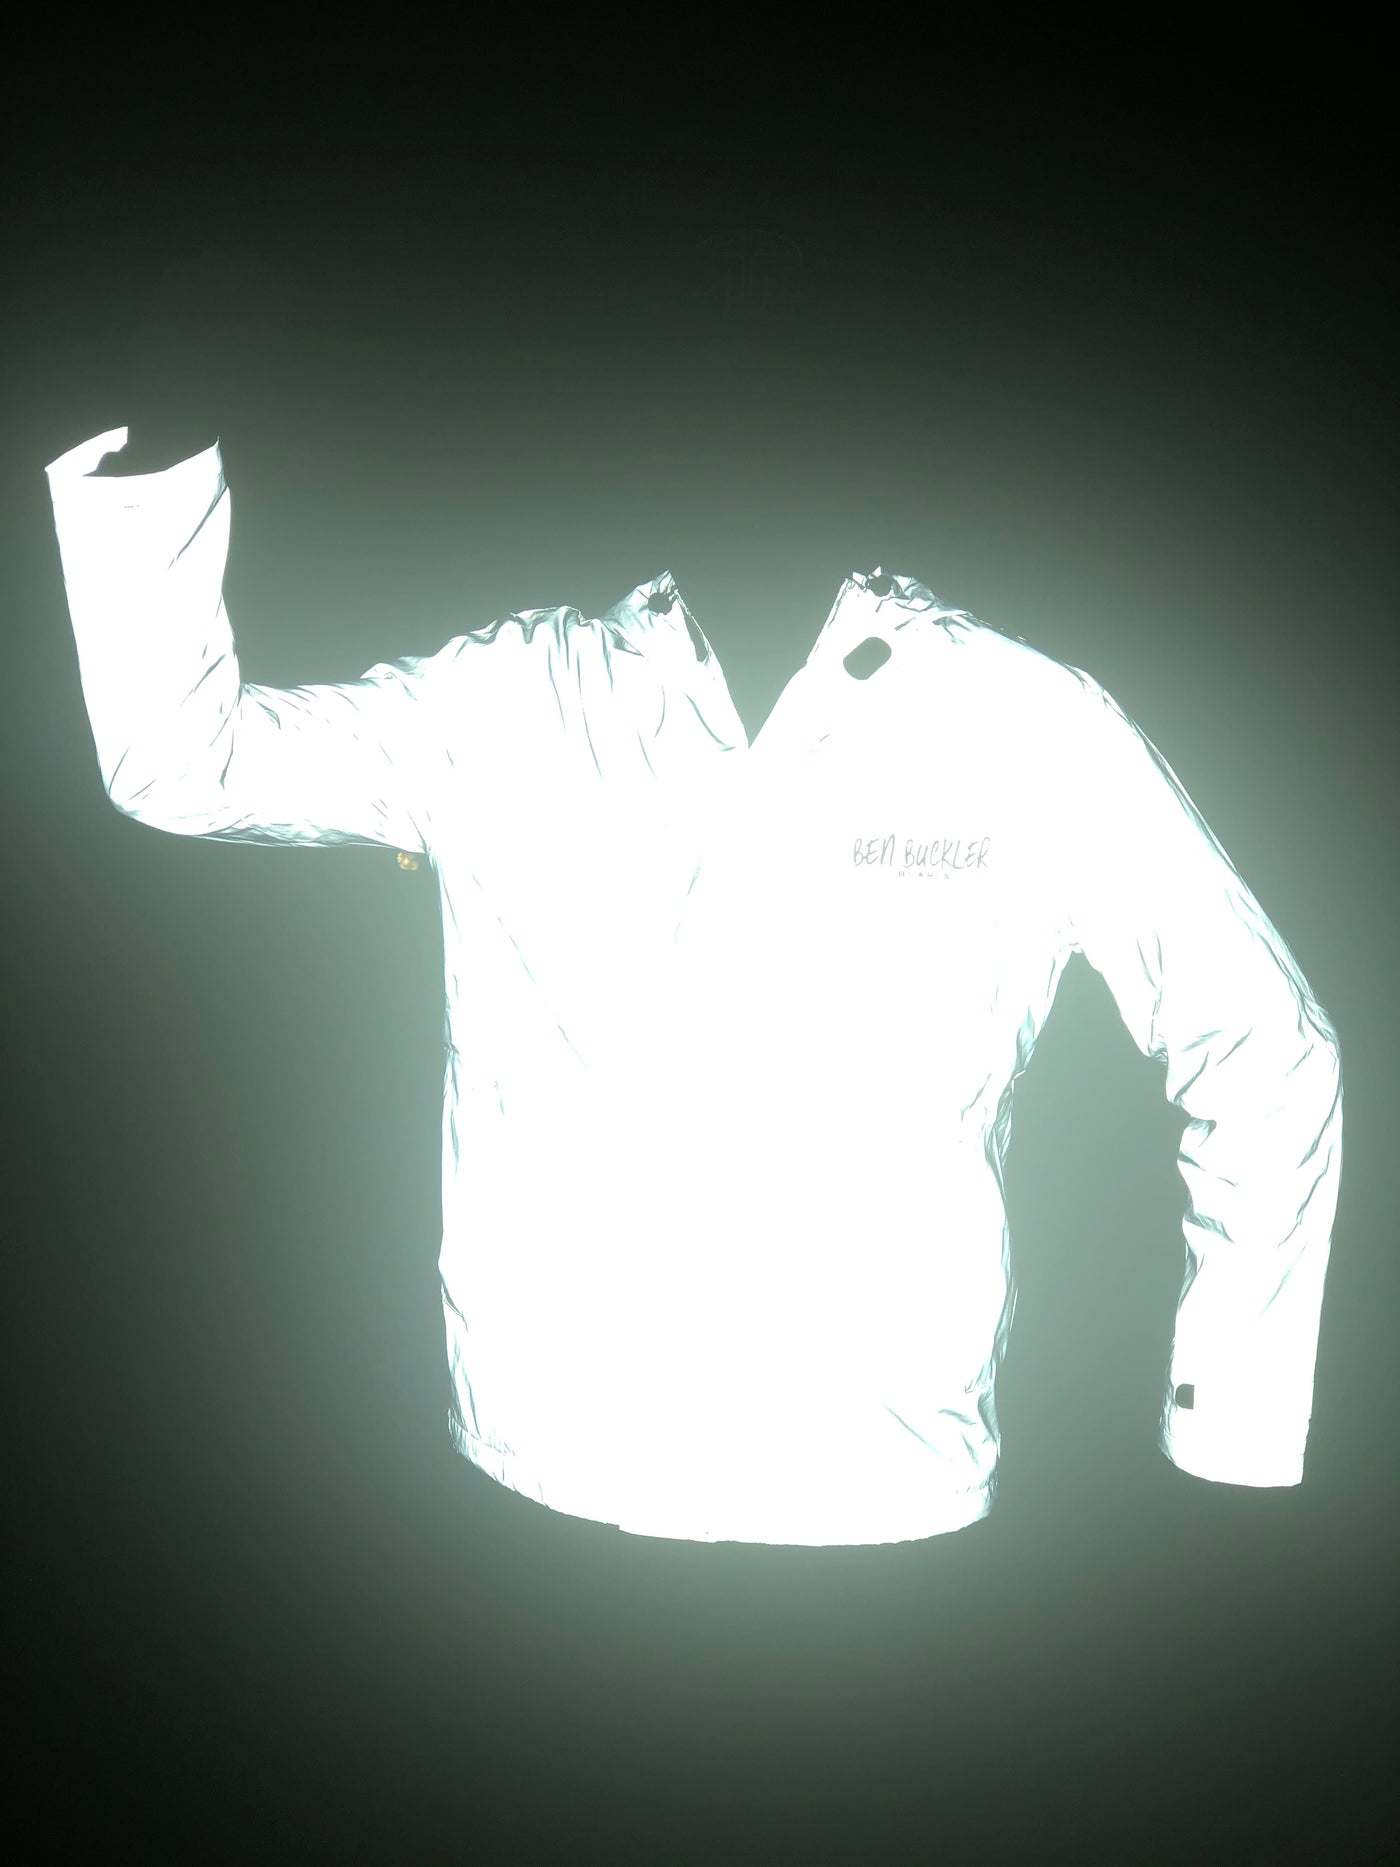 Reflective jacket at night